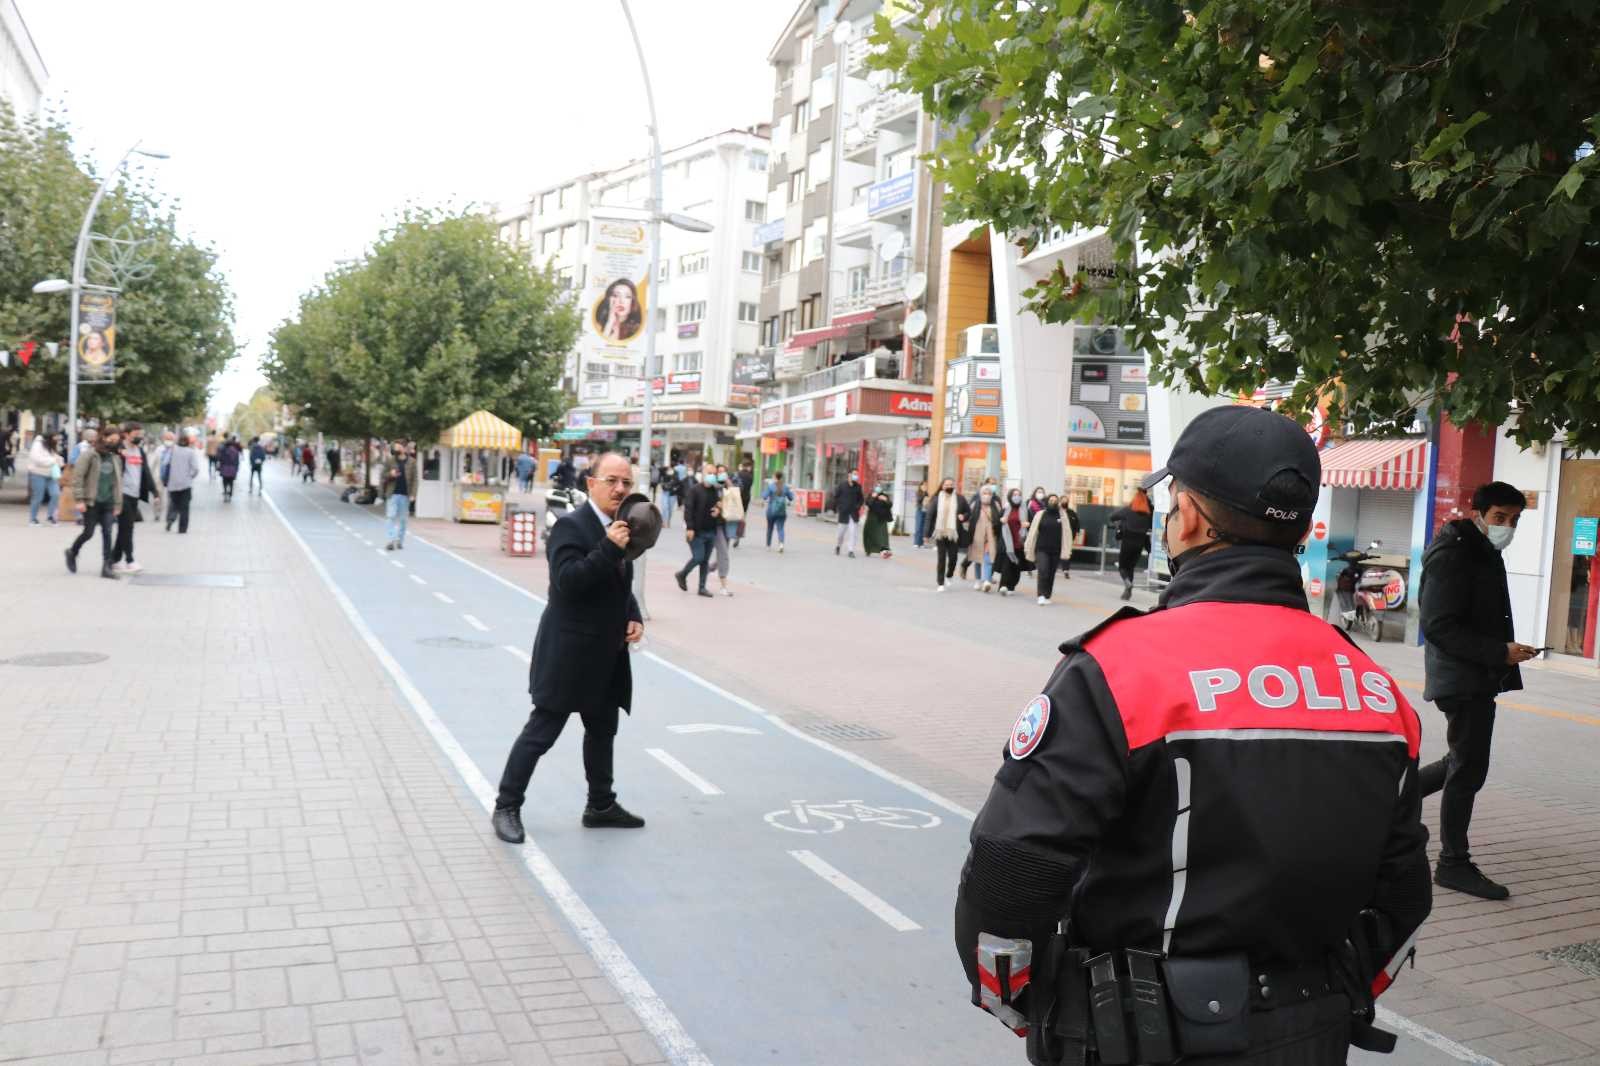 Maskesiz şahıs polisi görünce yüzünü şapkayla kapattı #bolu